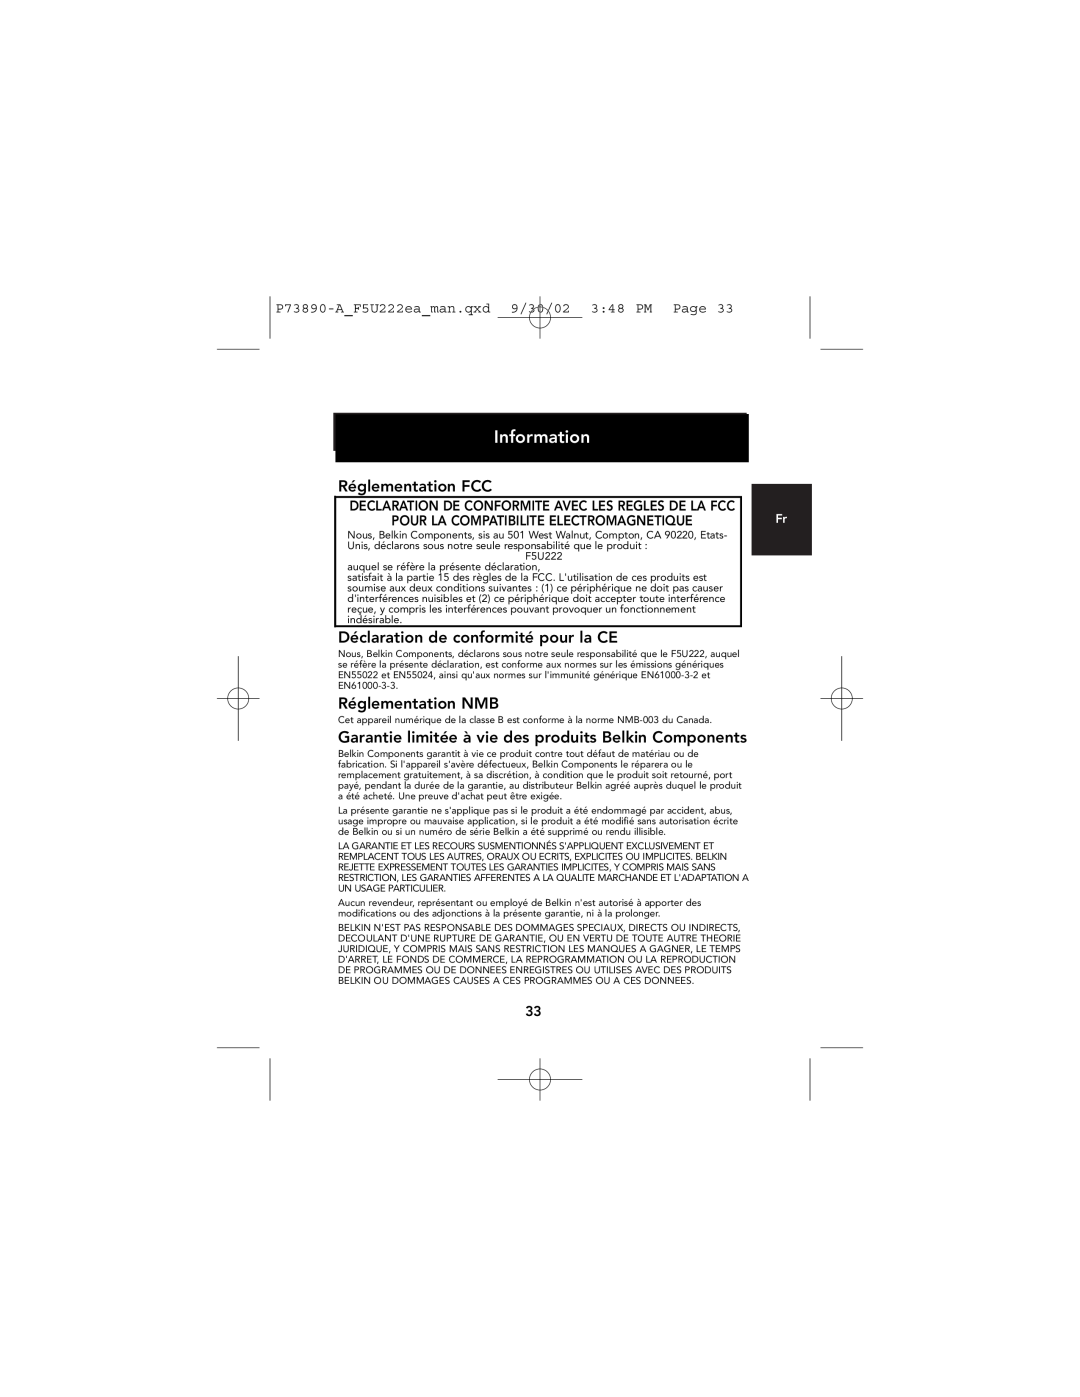 Belkin P73890EA-A manual Réglementation FCC, Déclaration de conformité pour la CE, Réglementation NMB, Information 